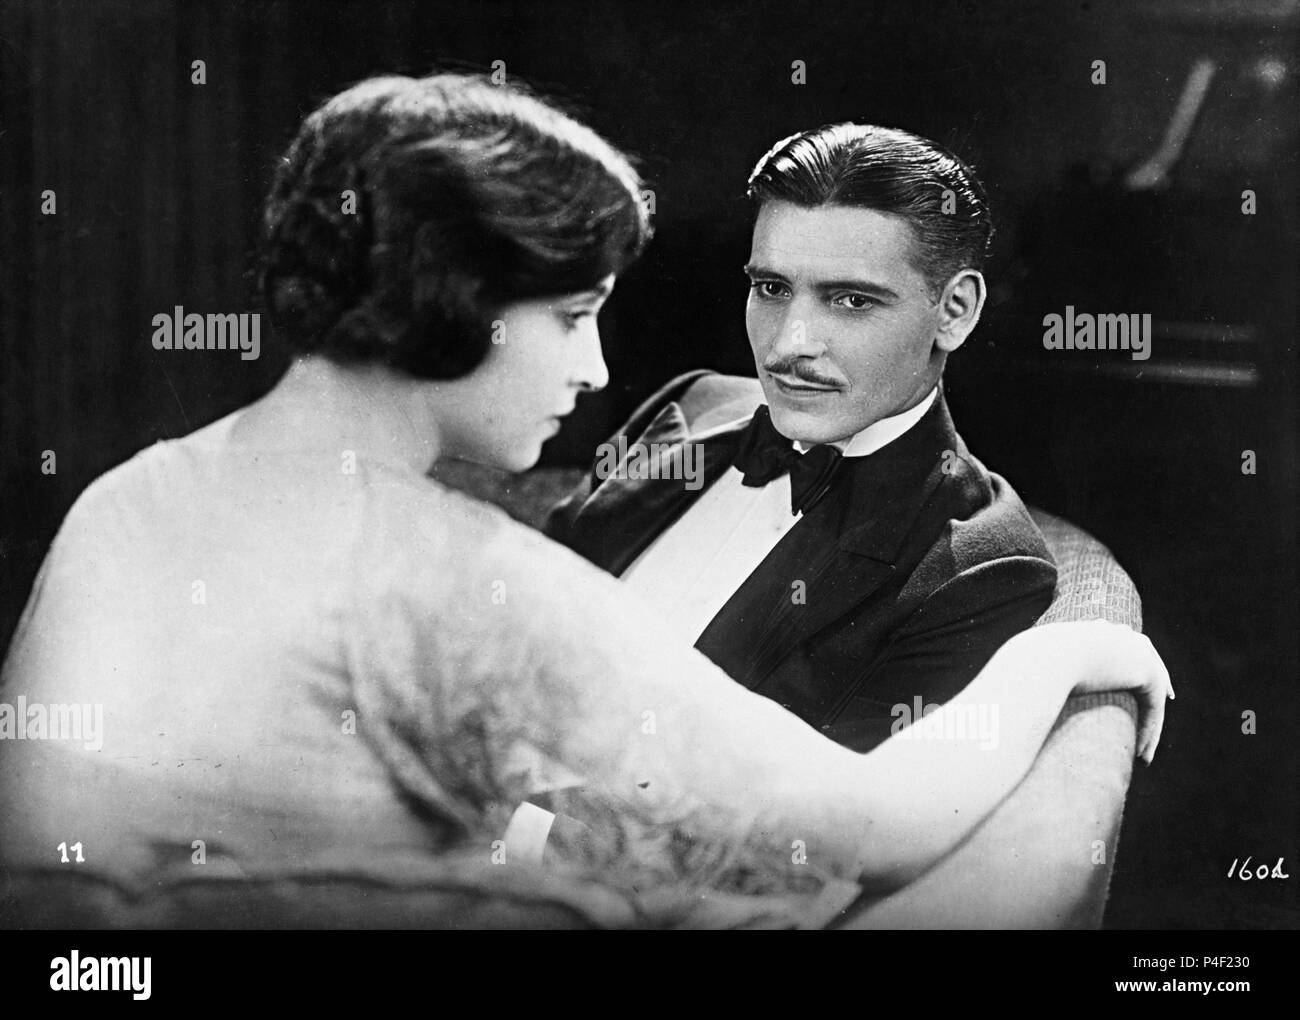 Stella Dallas (1925) - Filmaffinity